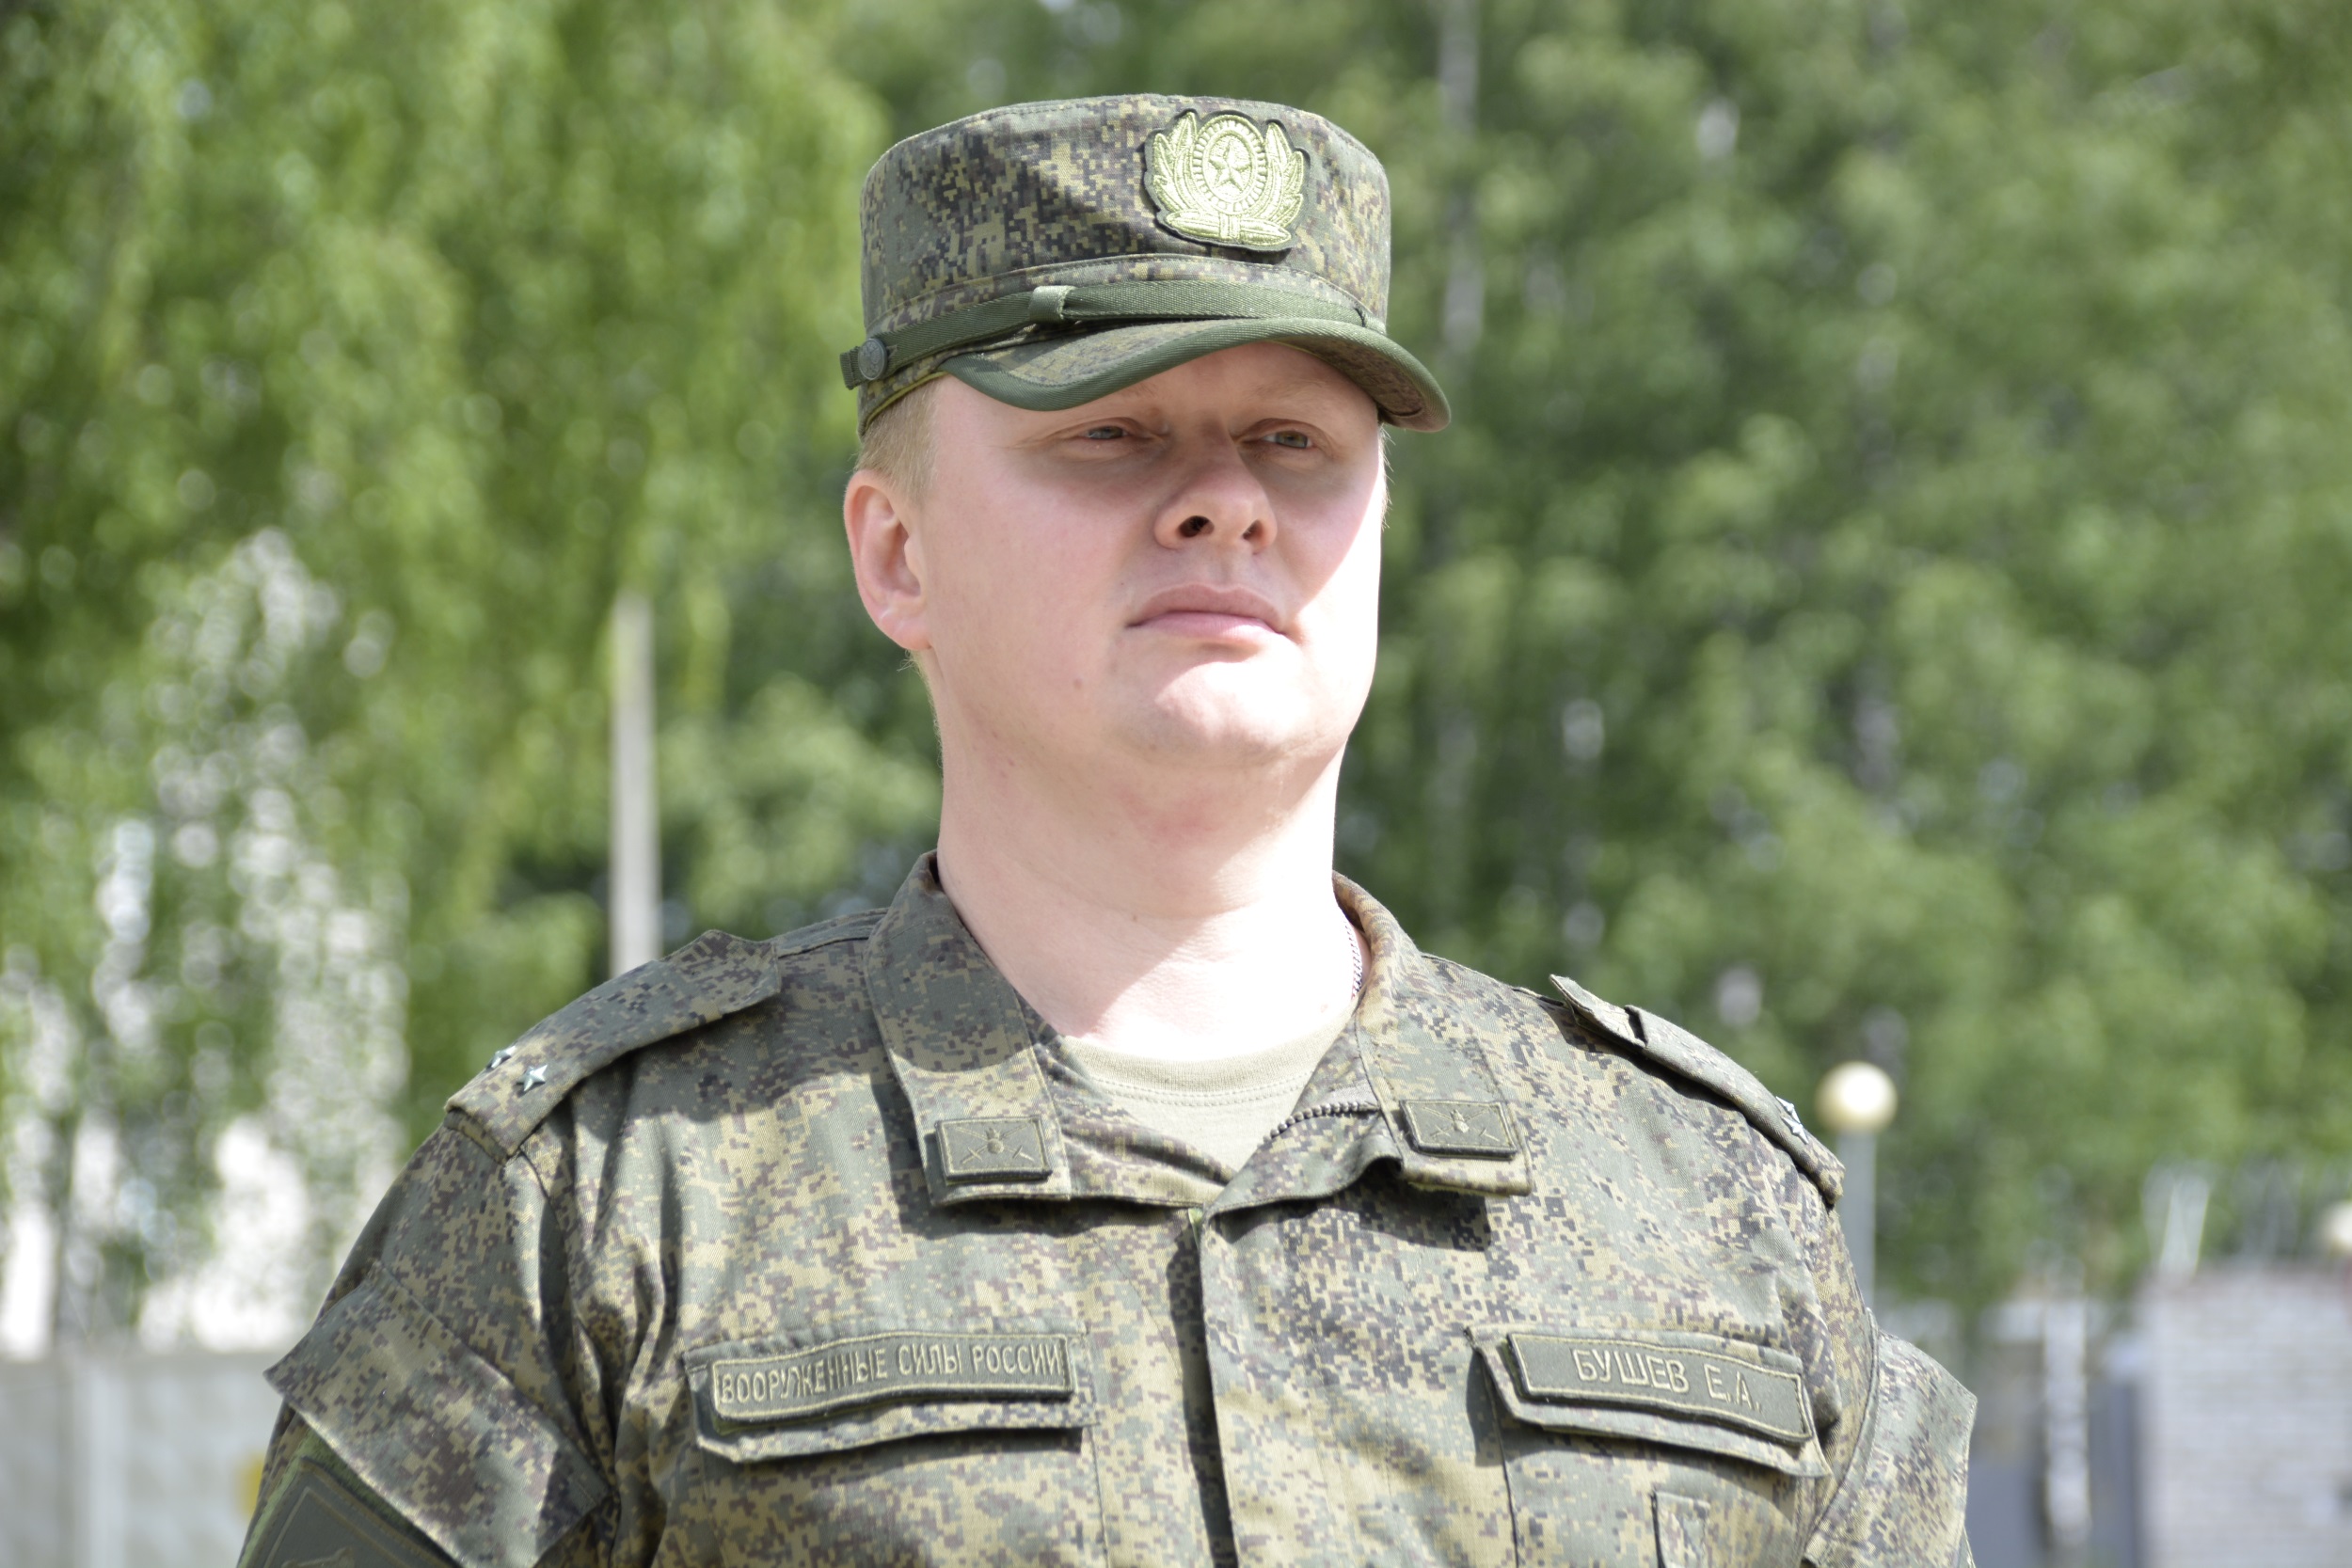 Аудитор Контрольно-счетной палаты Санкт-Петербурга Егор Бушев успешно завершил прохождение военных сборов